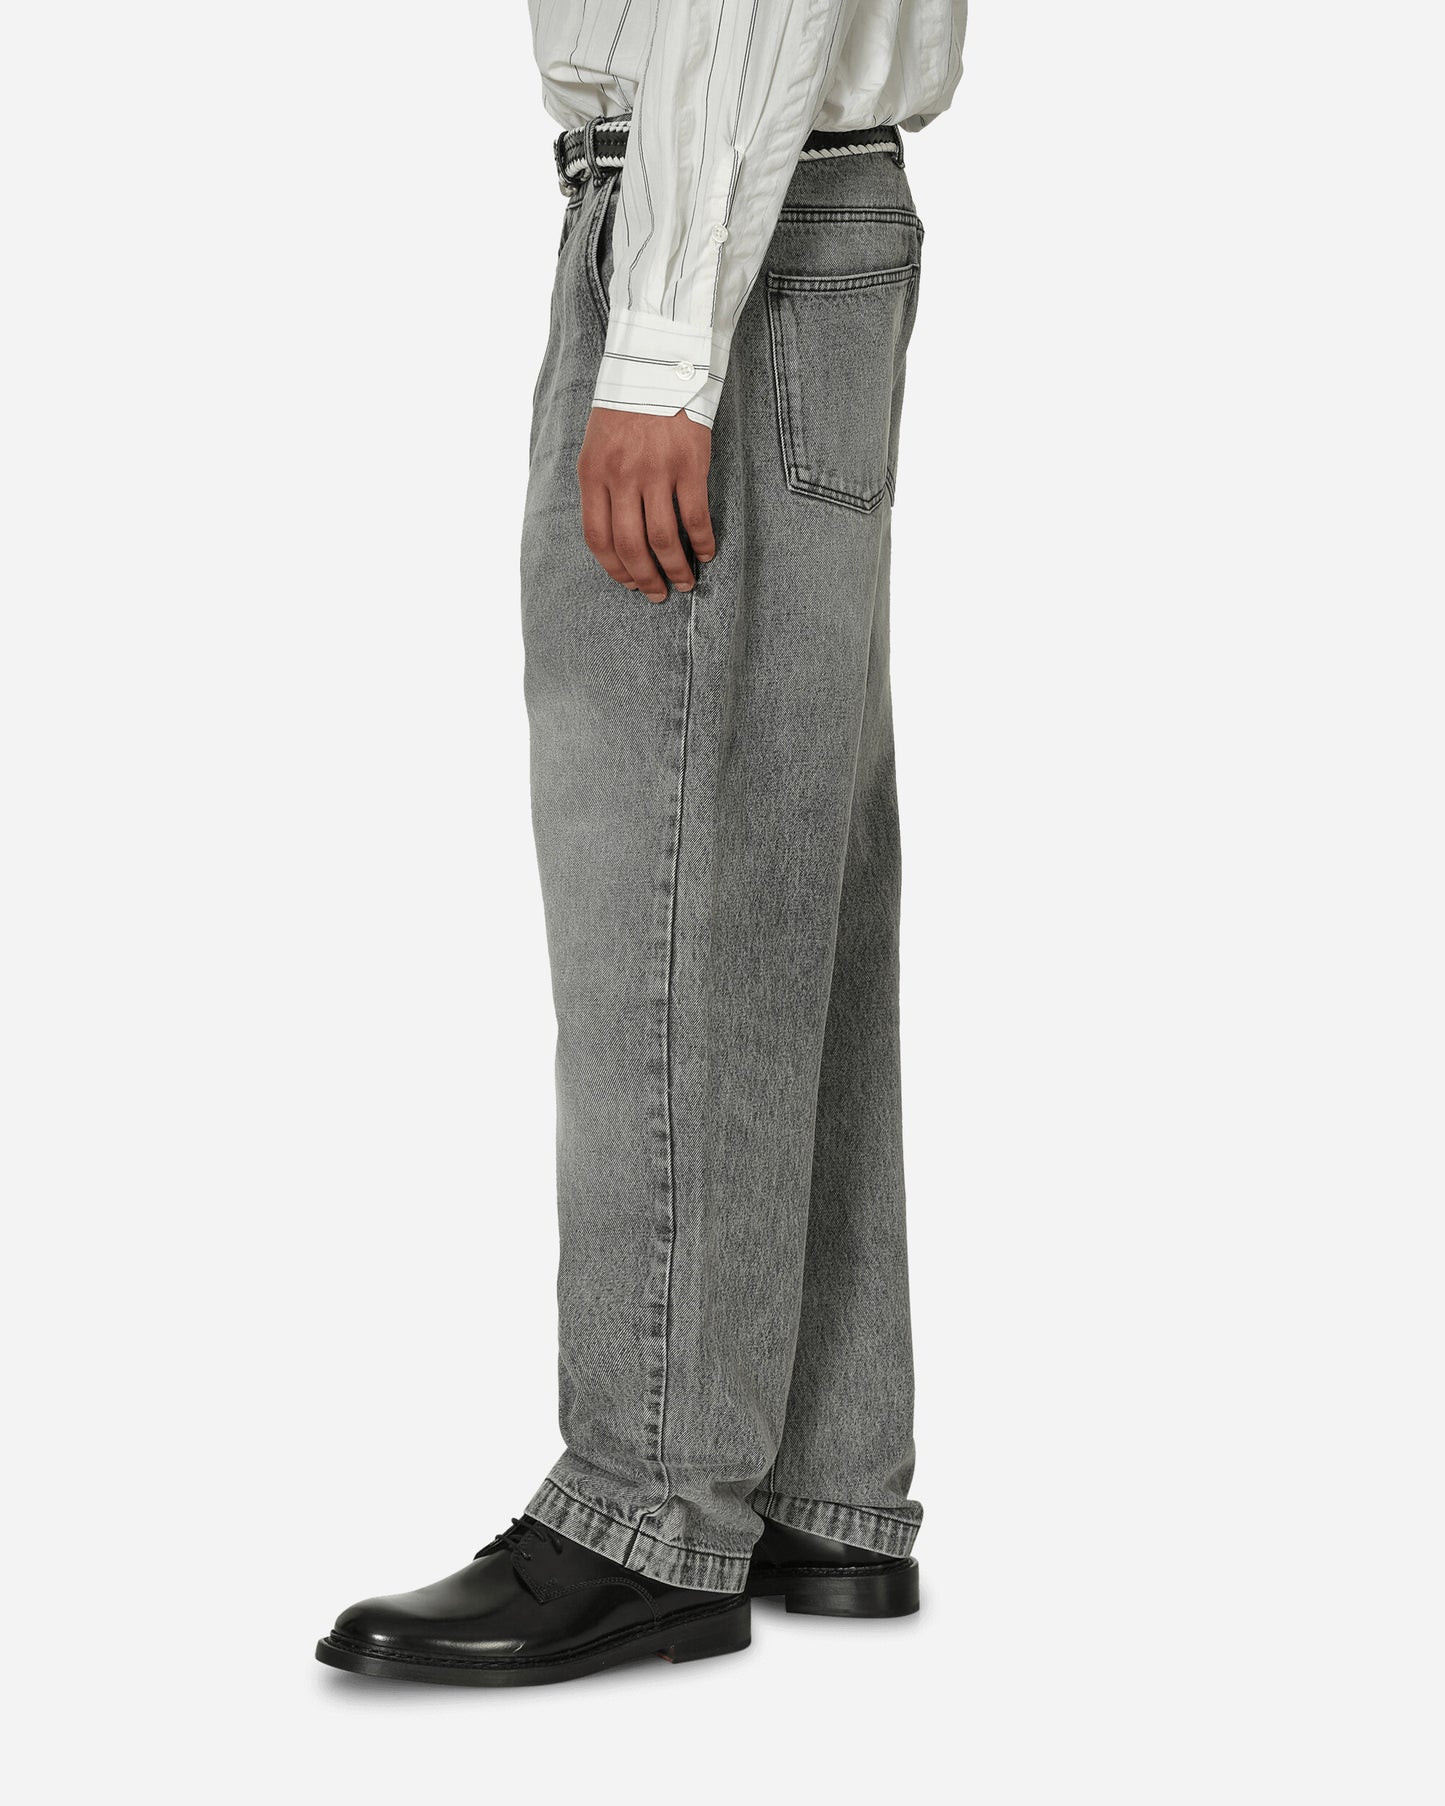 mfpen Regular Jeans Washed Grey Pants Denim M124-70 1